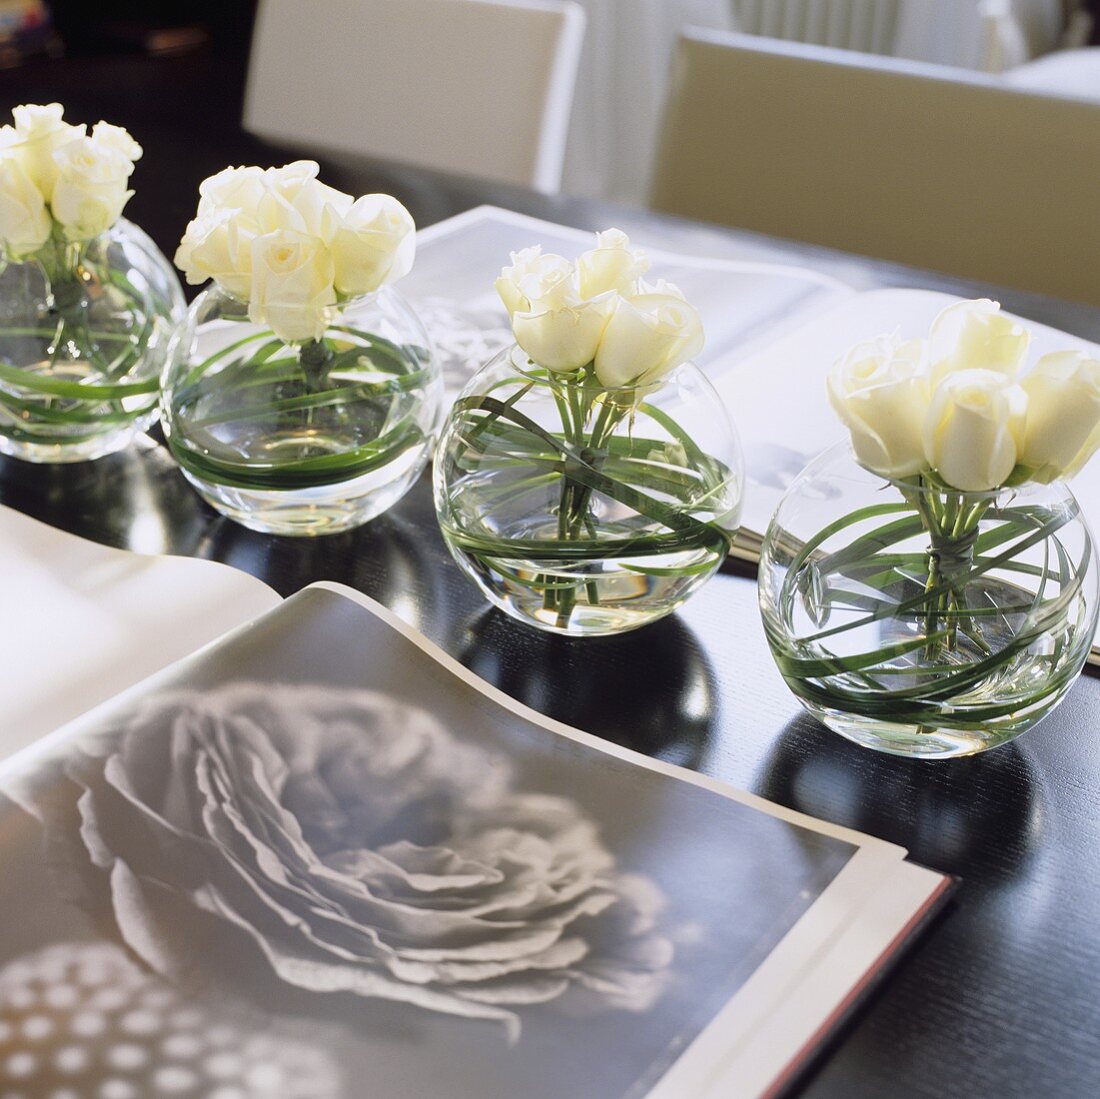 Kugelförmige Glasvasen mit weissen Rosen und offenes Buch mit Blumenmotiv